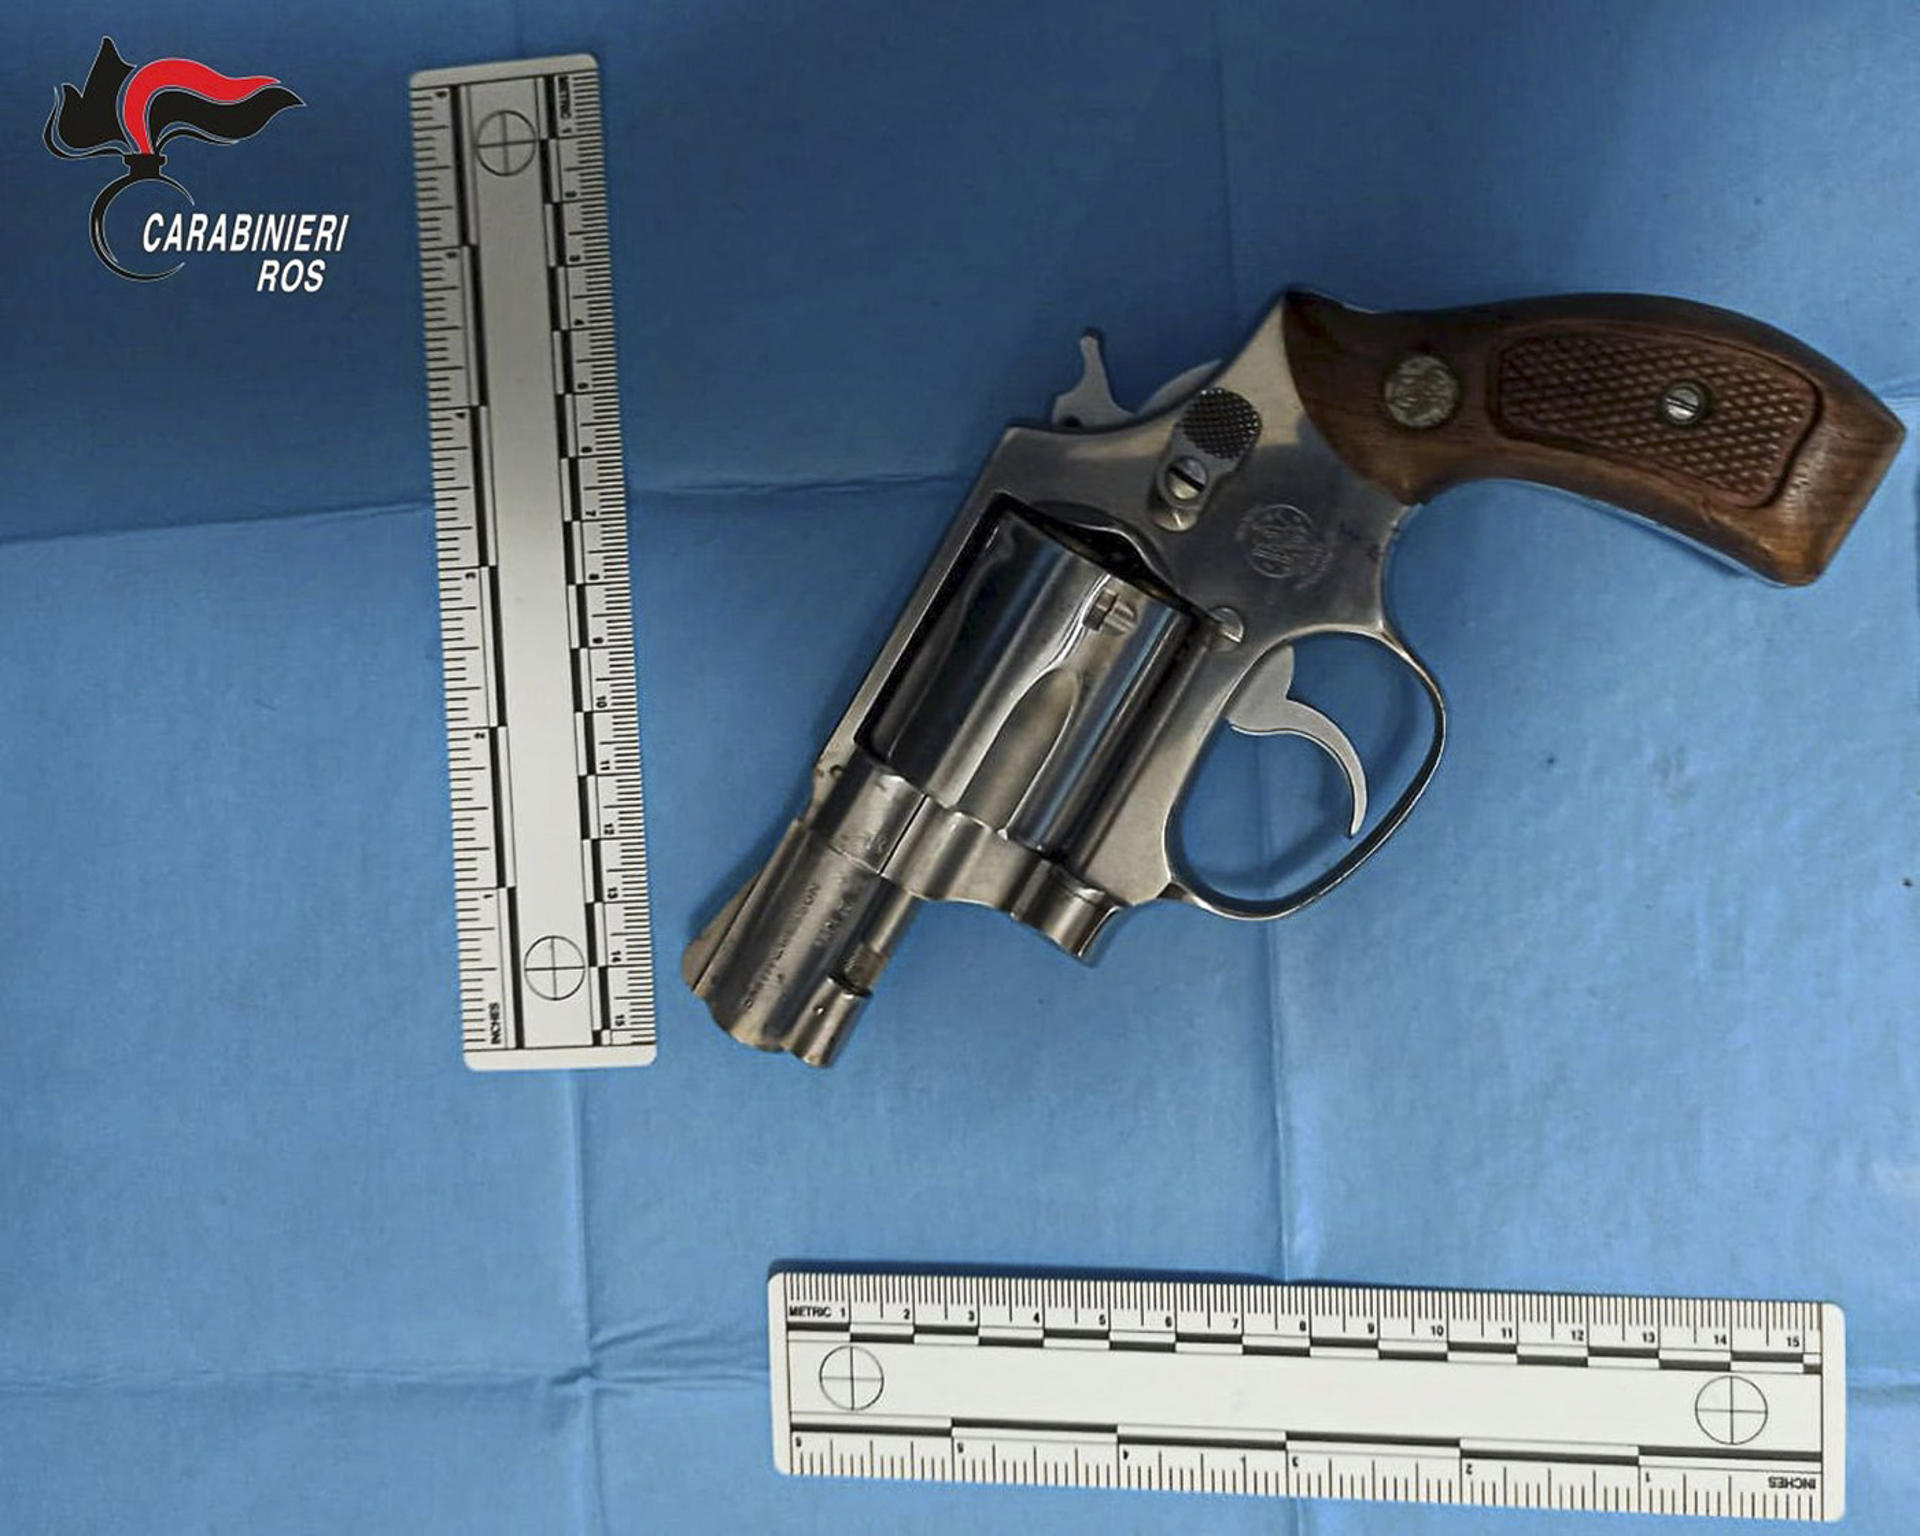 El revólver del jefe de Cosa Nostra, encontrado en uno de sus escondites